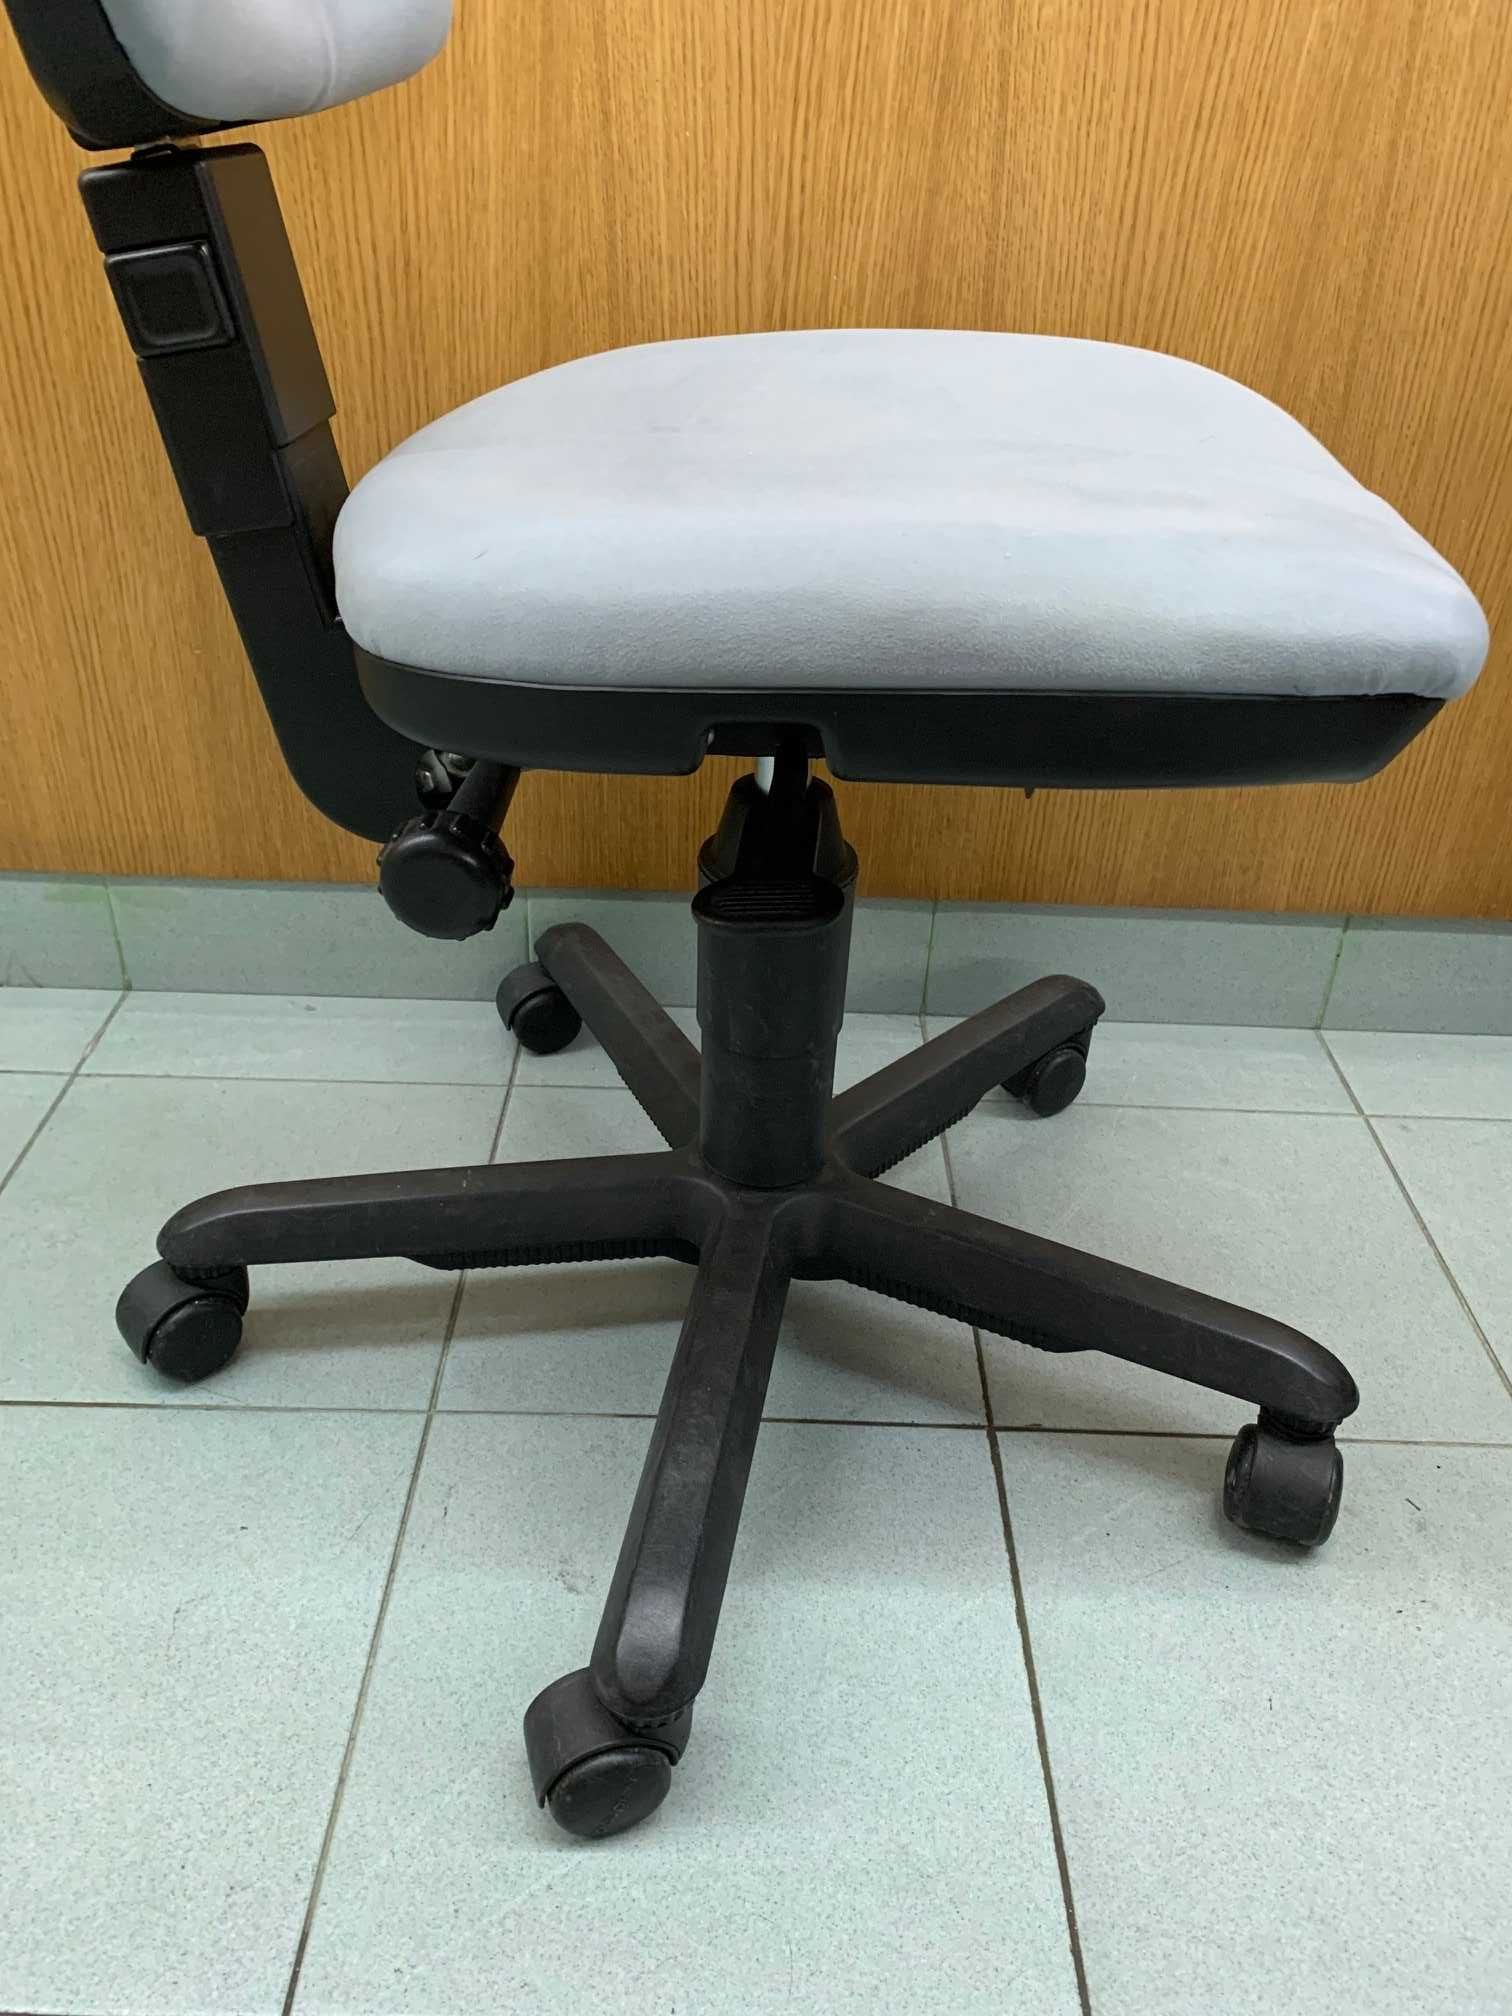 Cadeira de escritório em tecido cinza com regulação